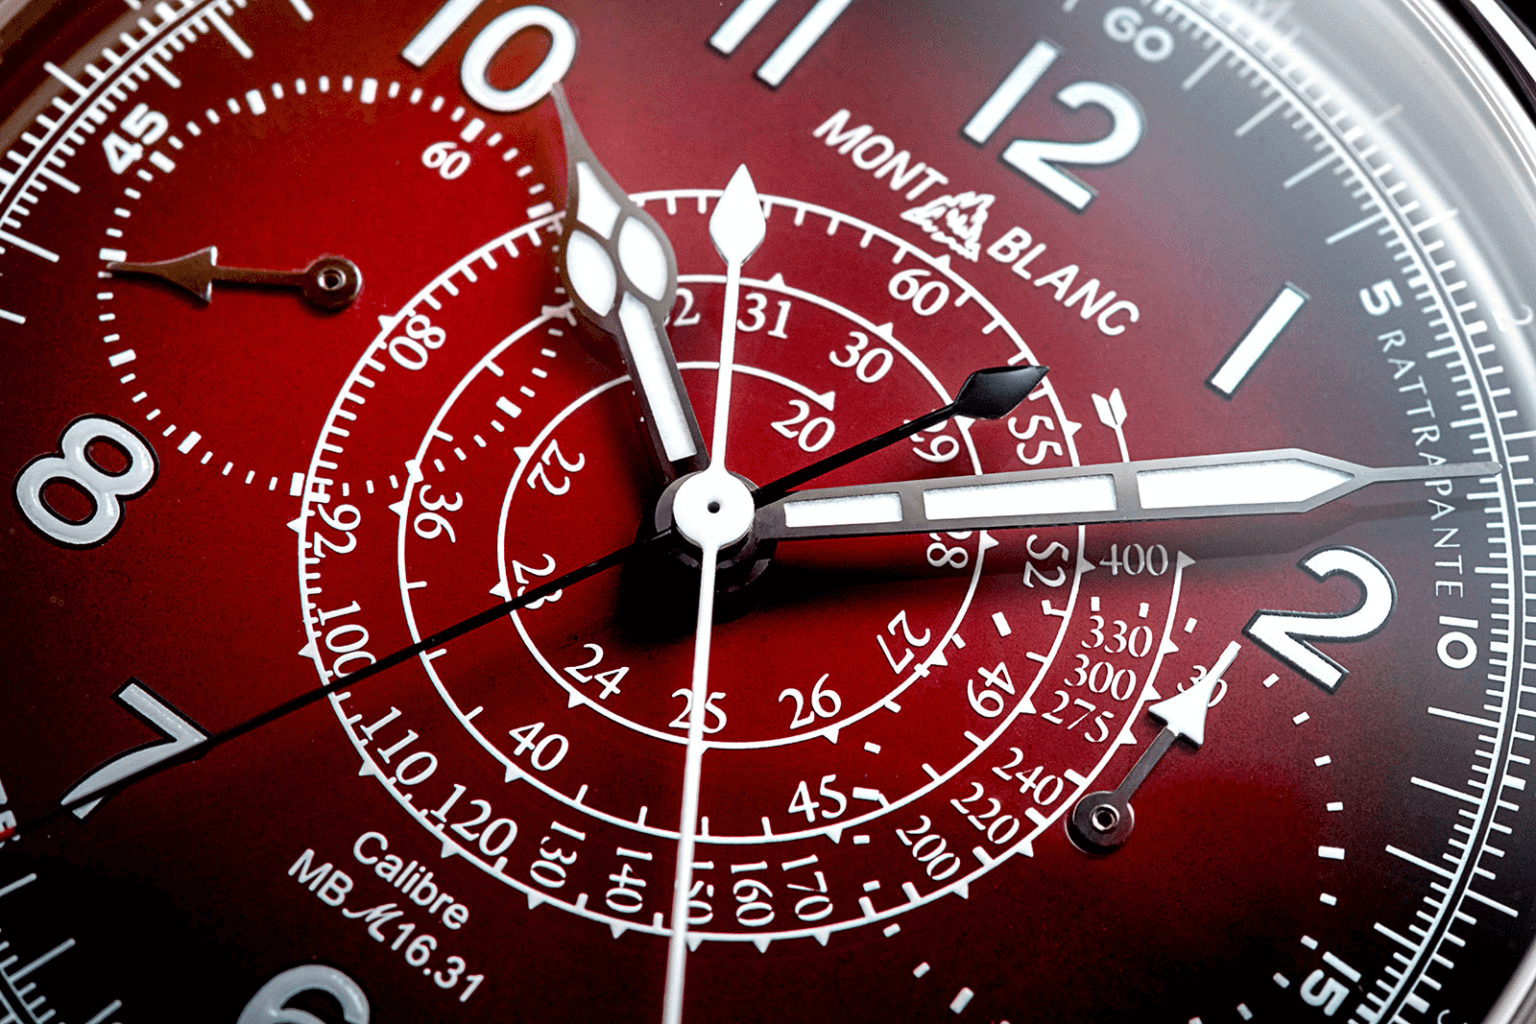 đồng hồ chronograph tách giây montblanc 1858 phiên bản limited màu đỏ giáng sinh 2020